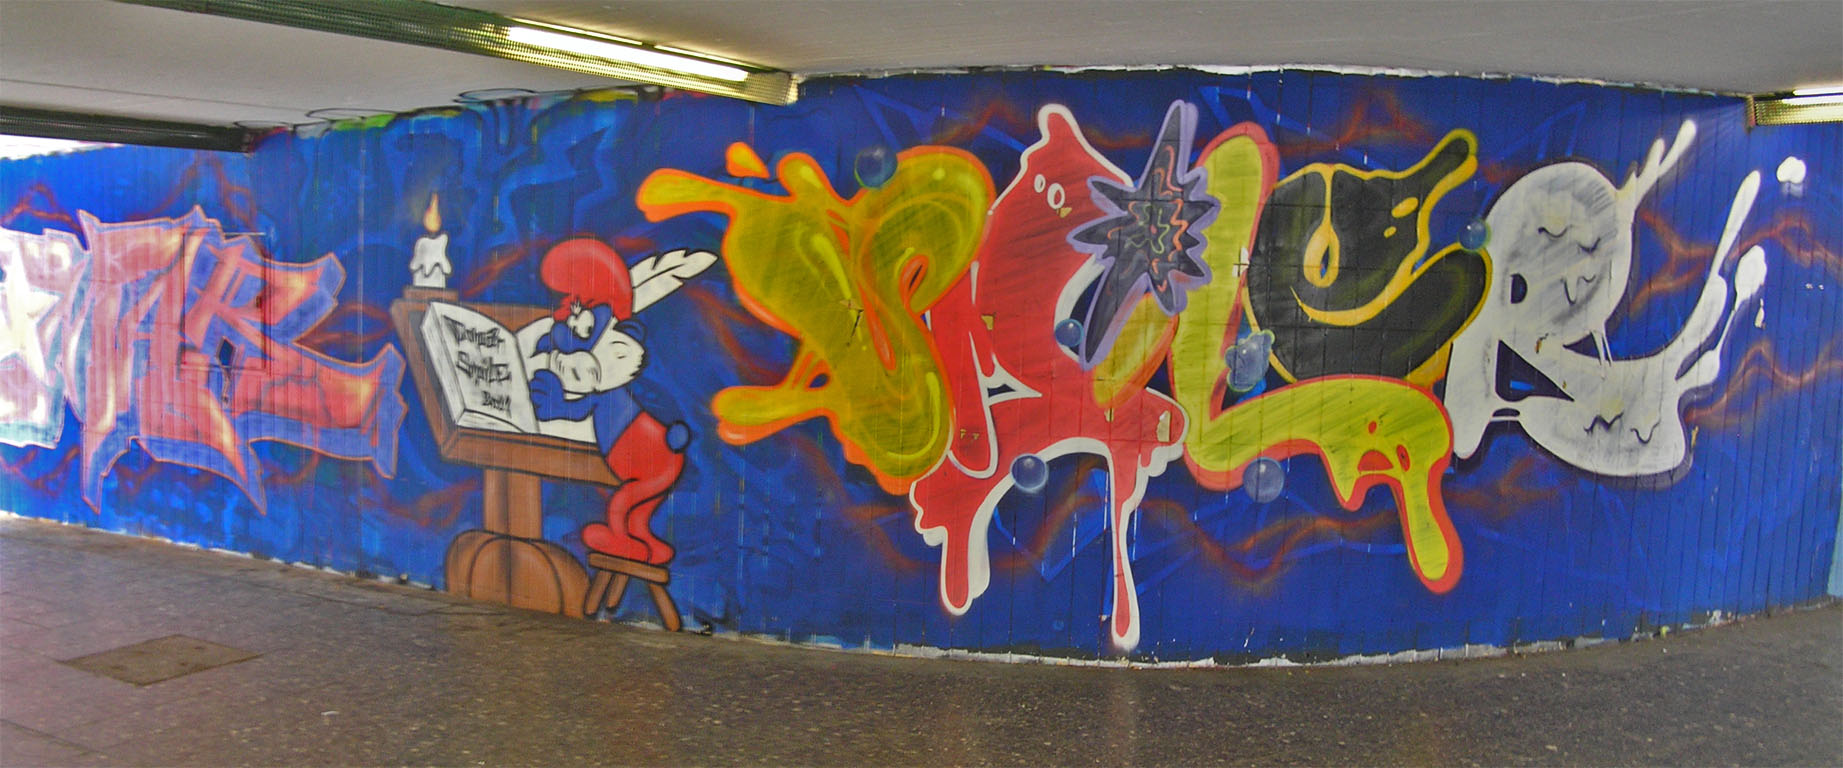 Wiesloch-Schillerpark-Graffiti-14.jpg